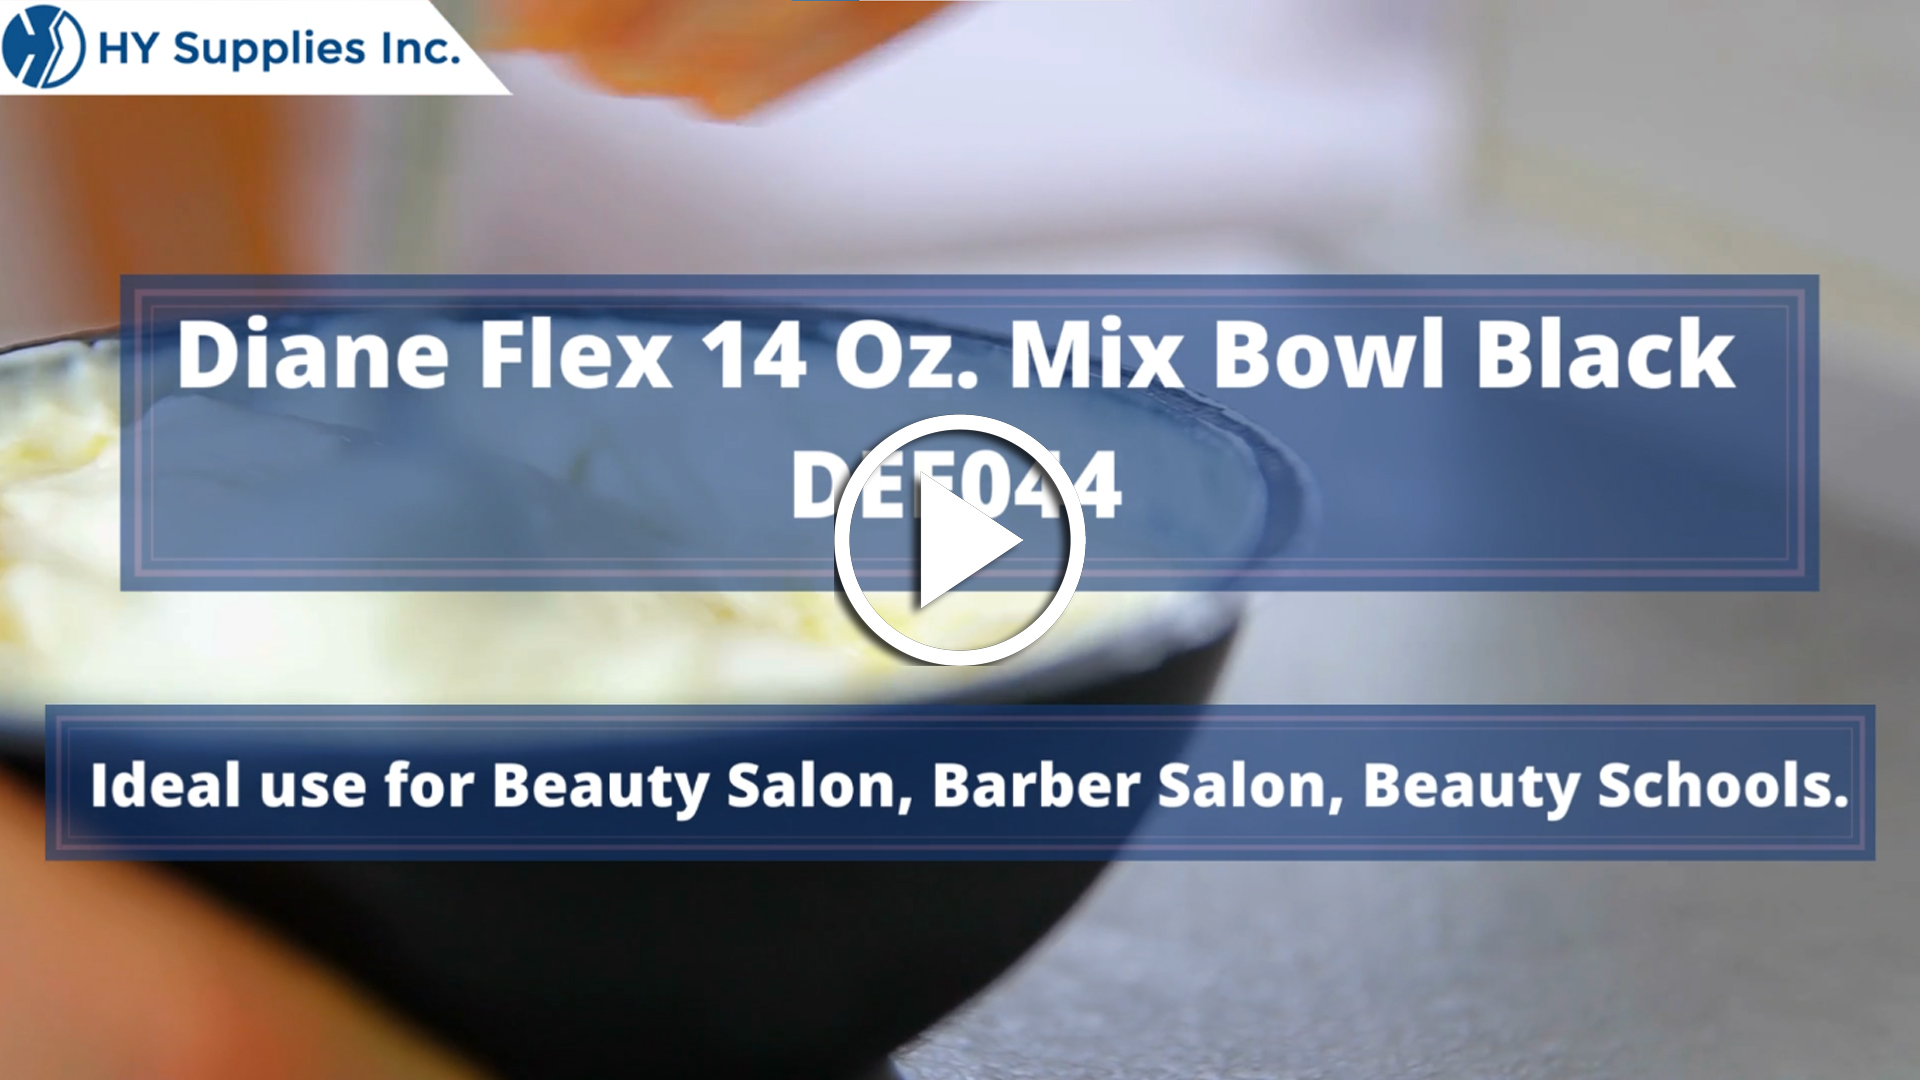 Diane Flex 14 Oz. Mix Bowl Black DEE044